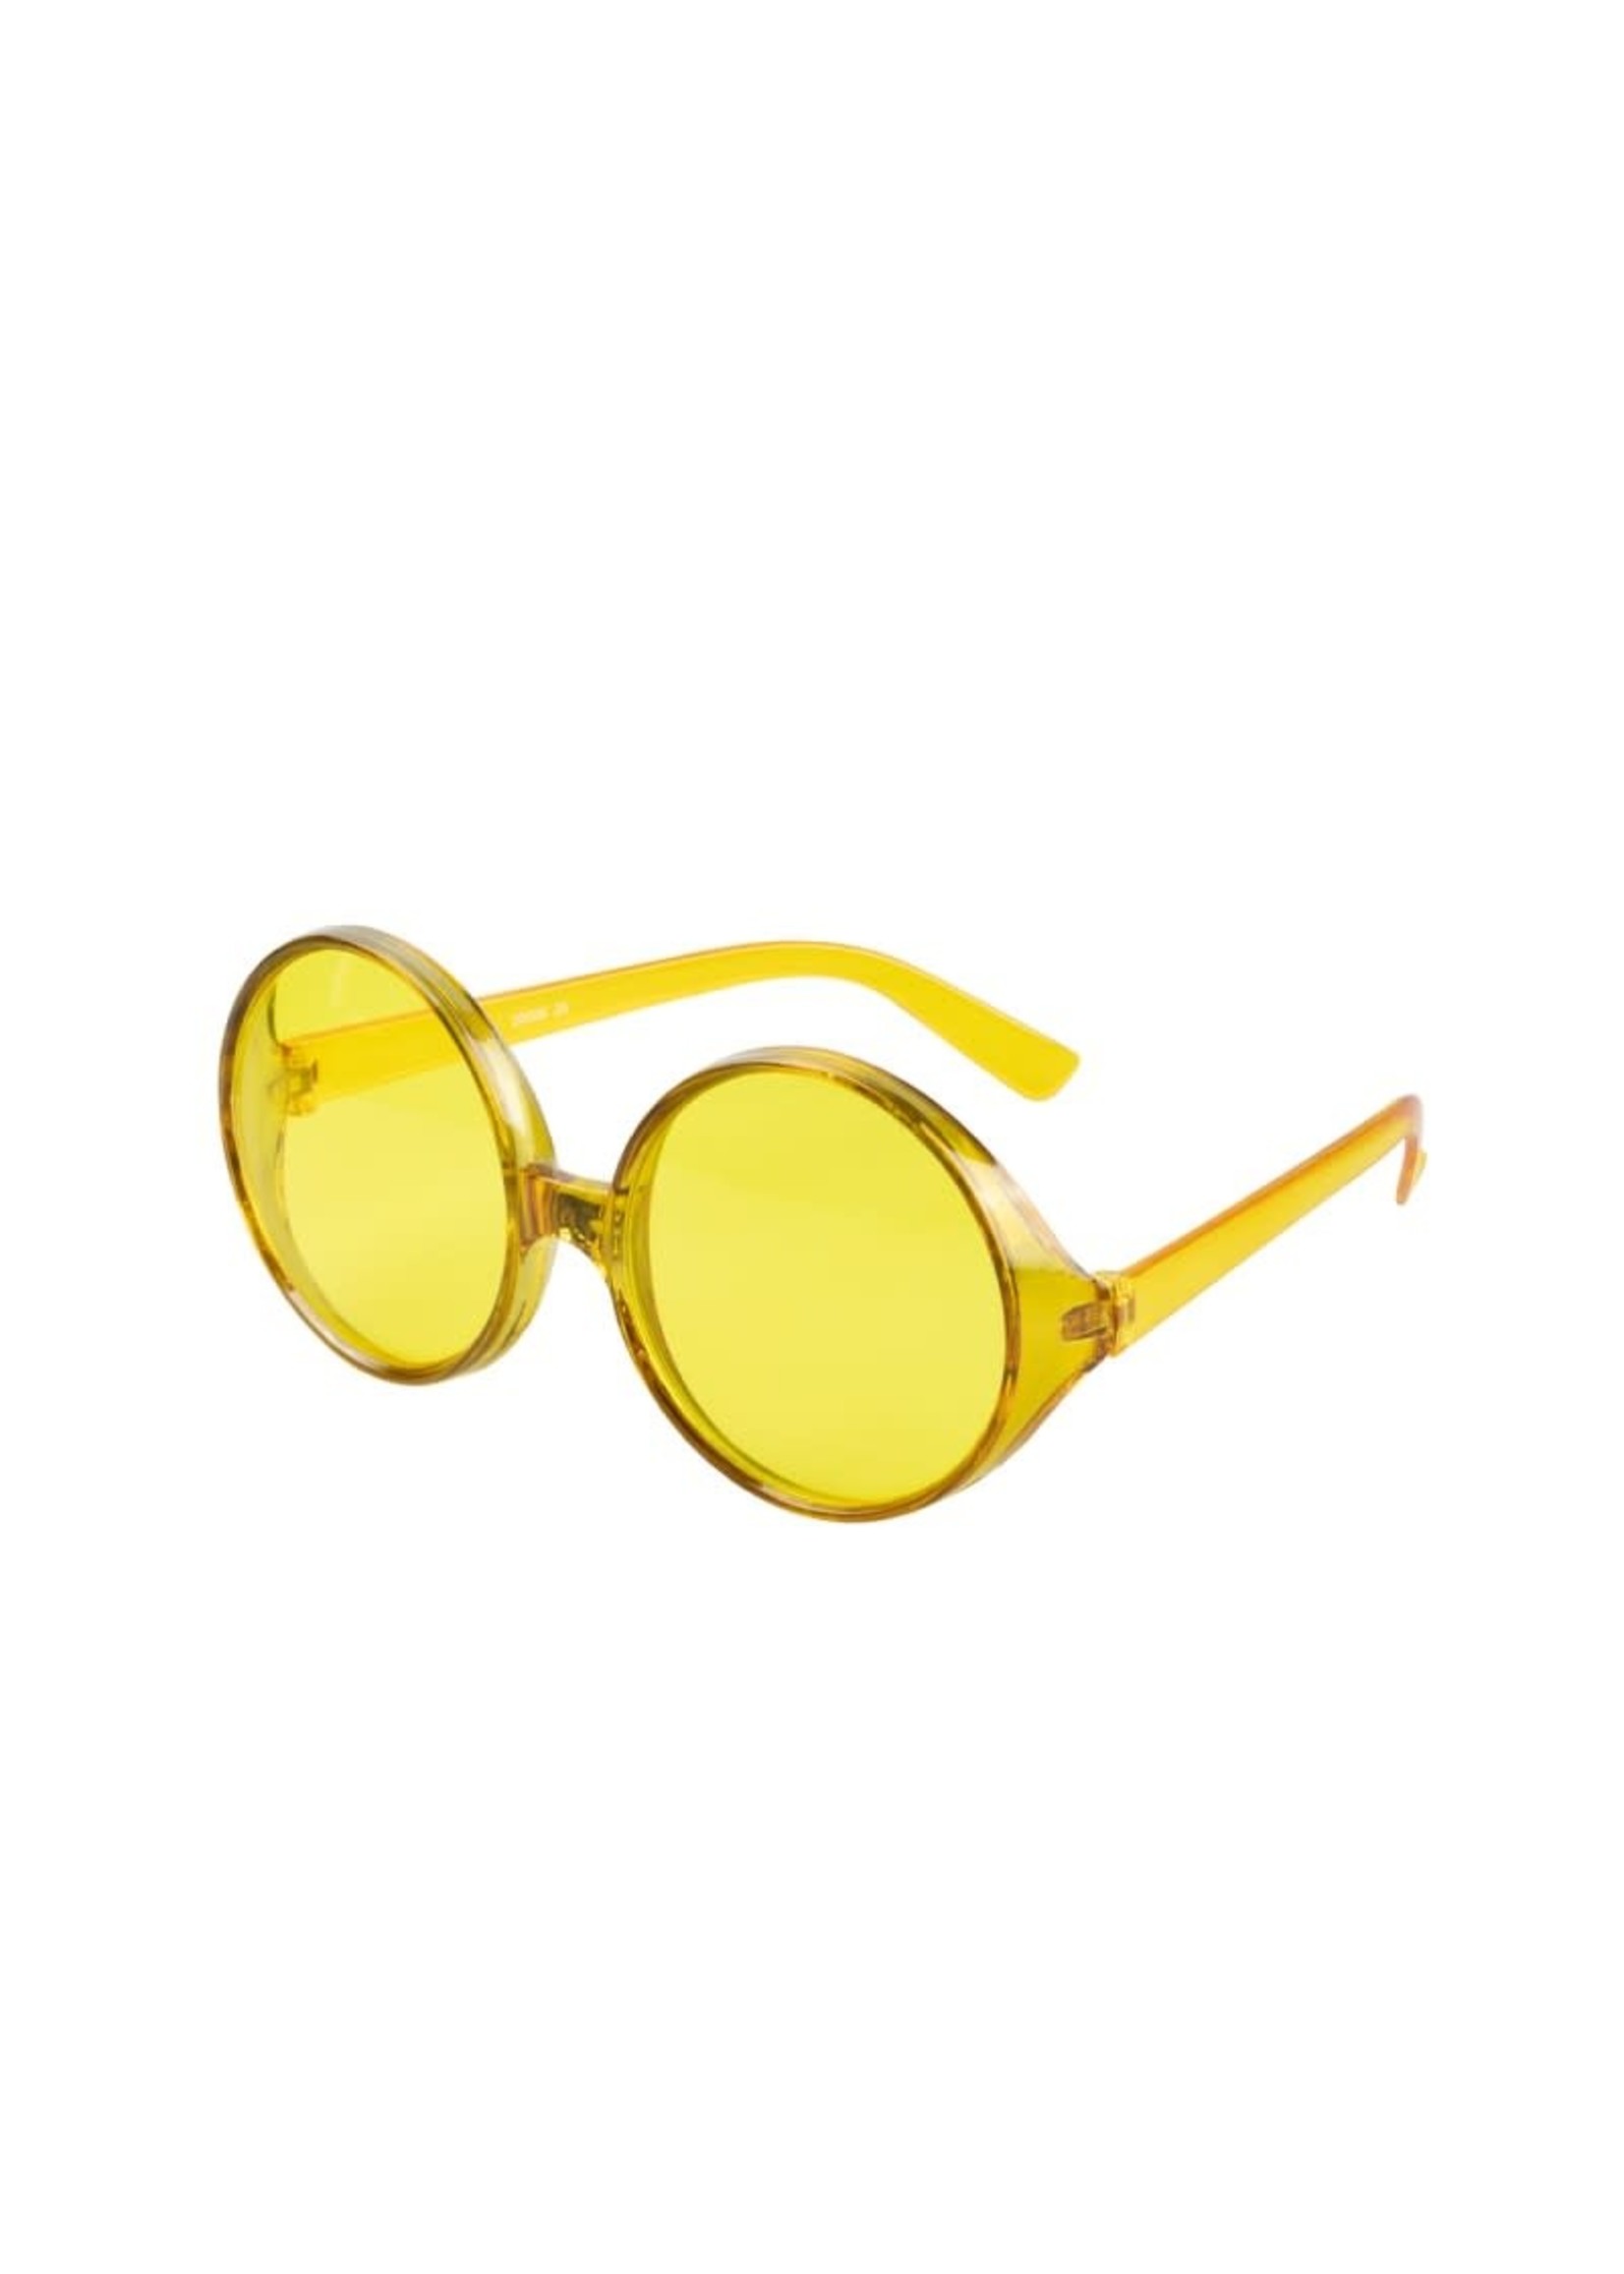 Feestkleding Breda Partybril met grote ronde glazen geel